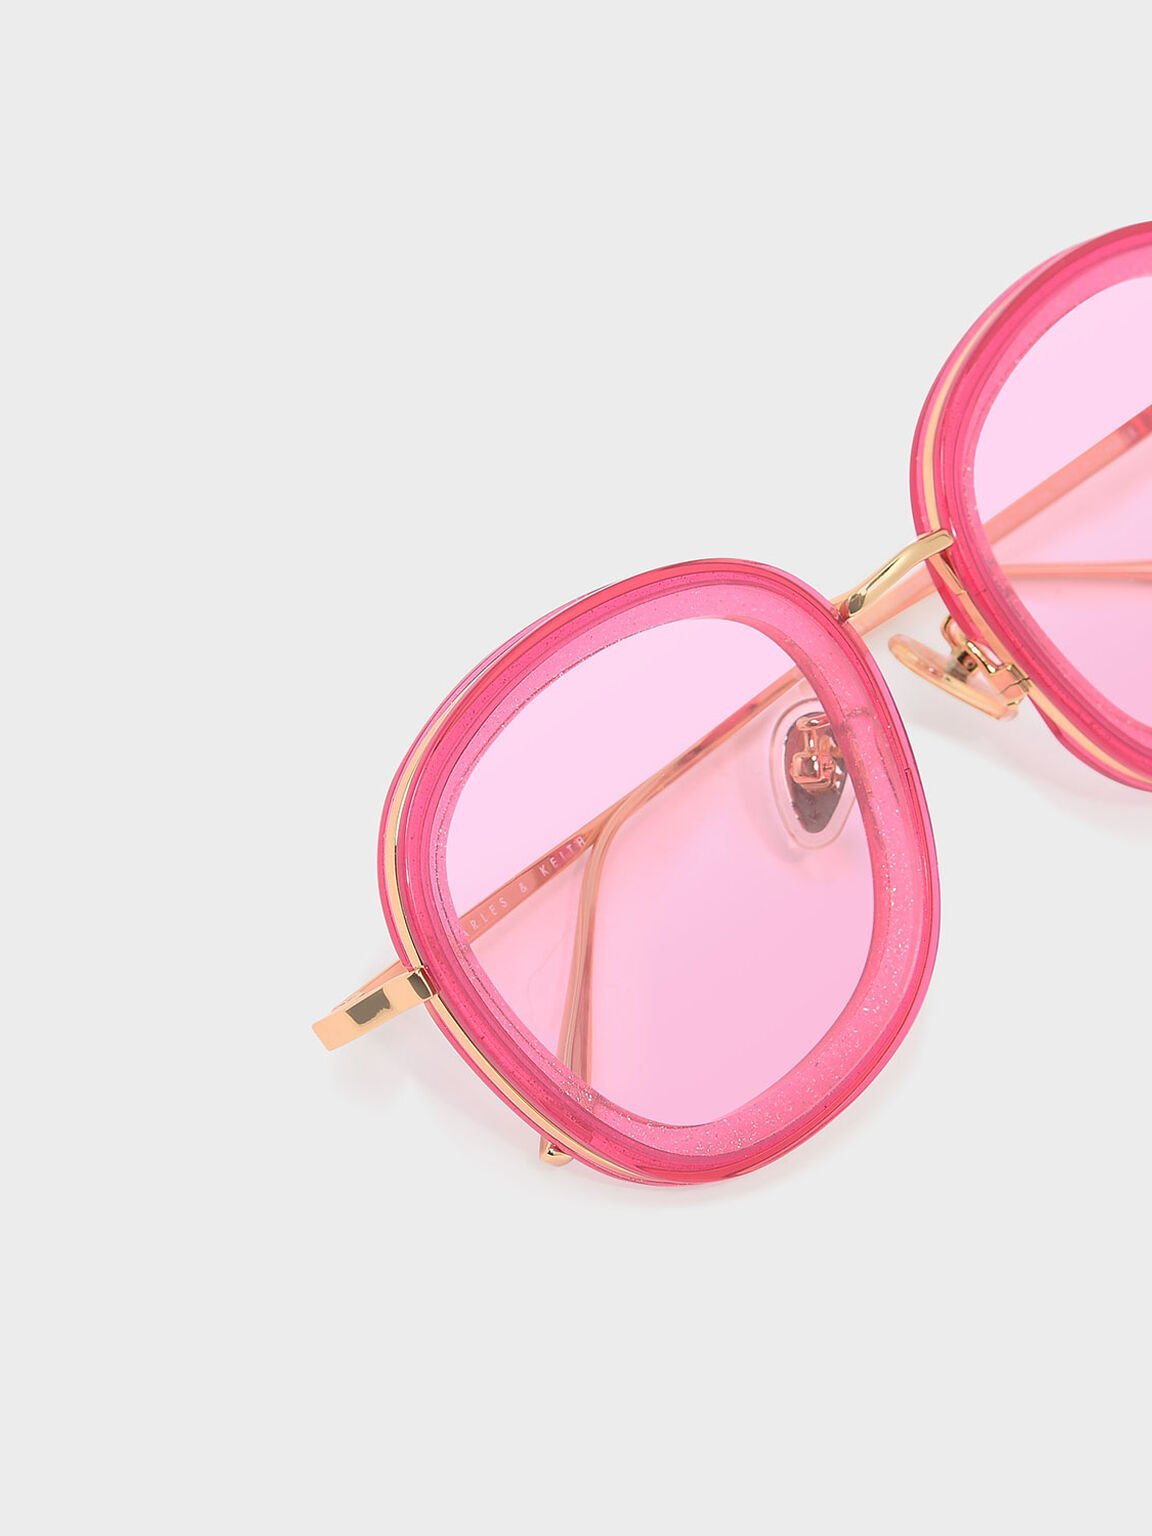 蝴蝶膠框太陽眼鏡, 粉紅色, hi-res